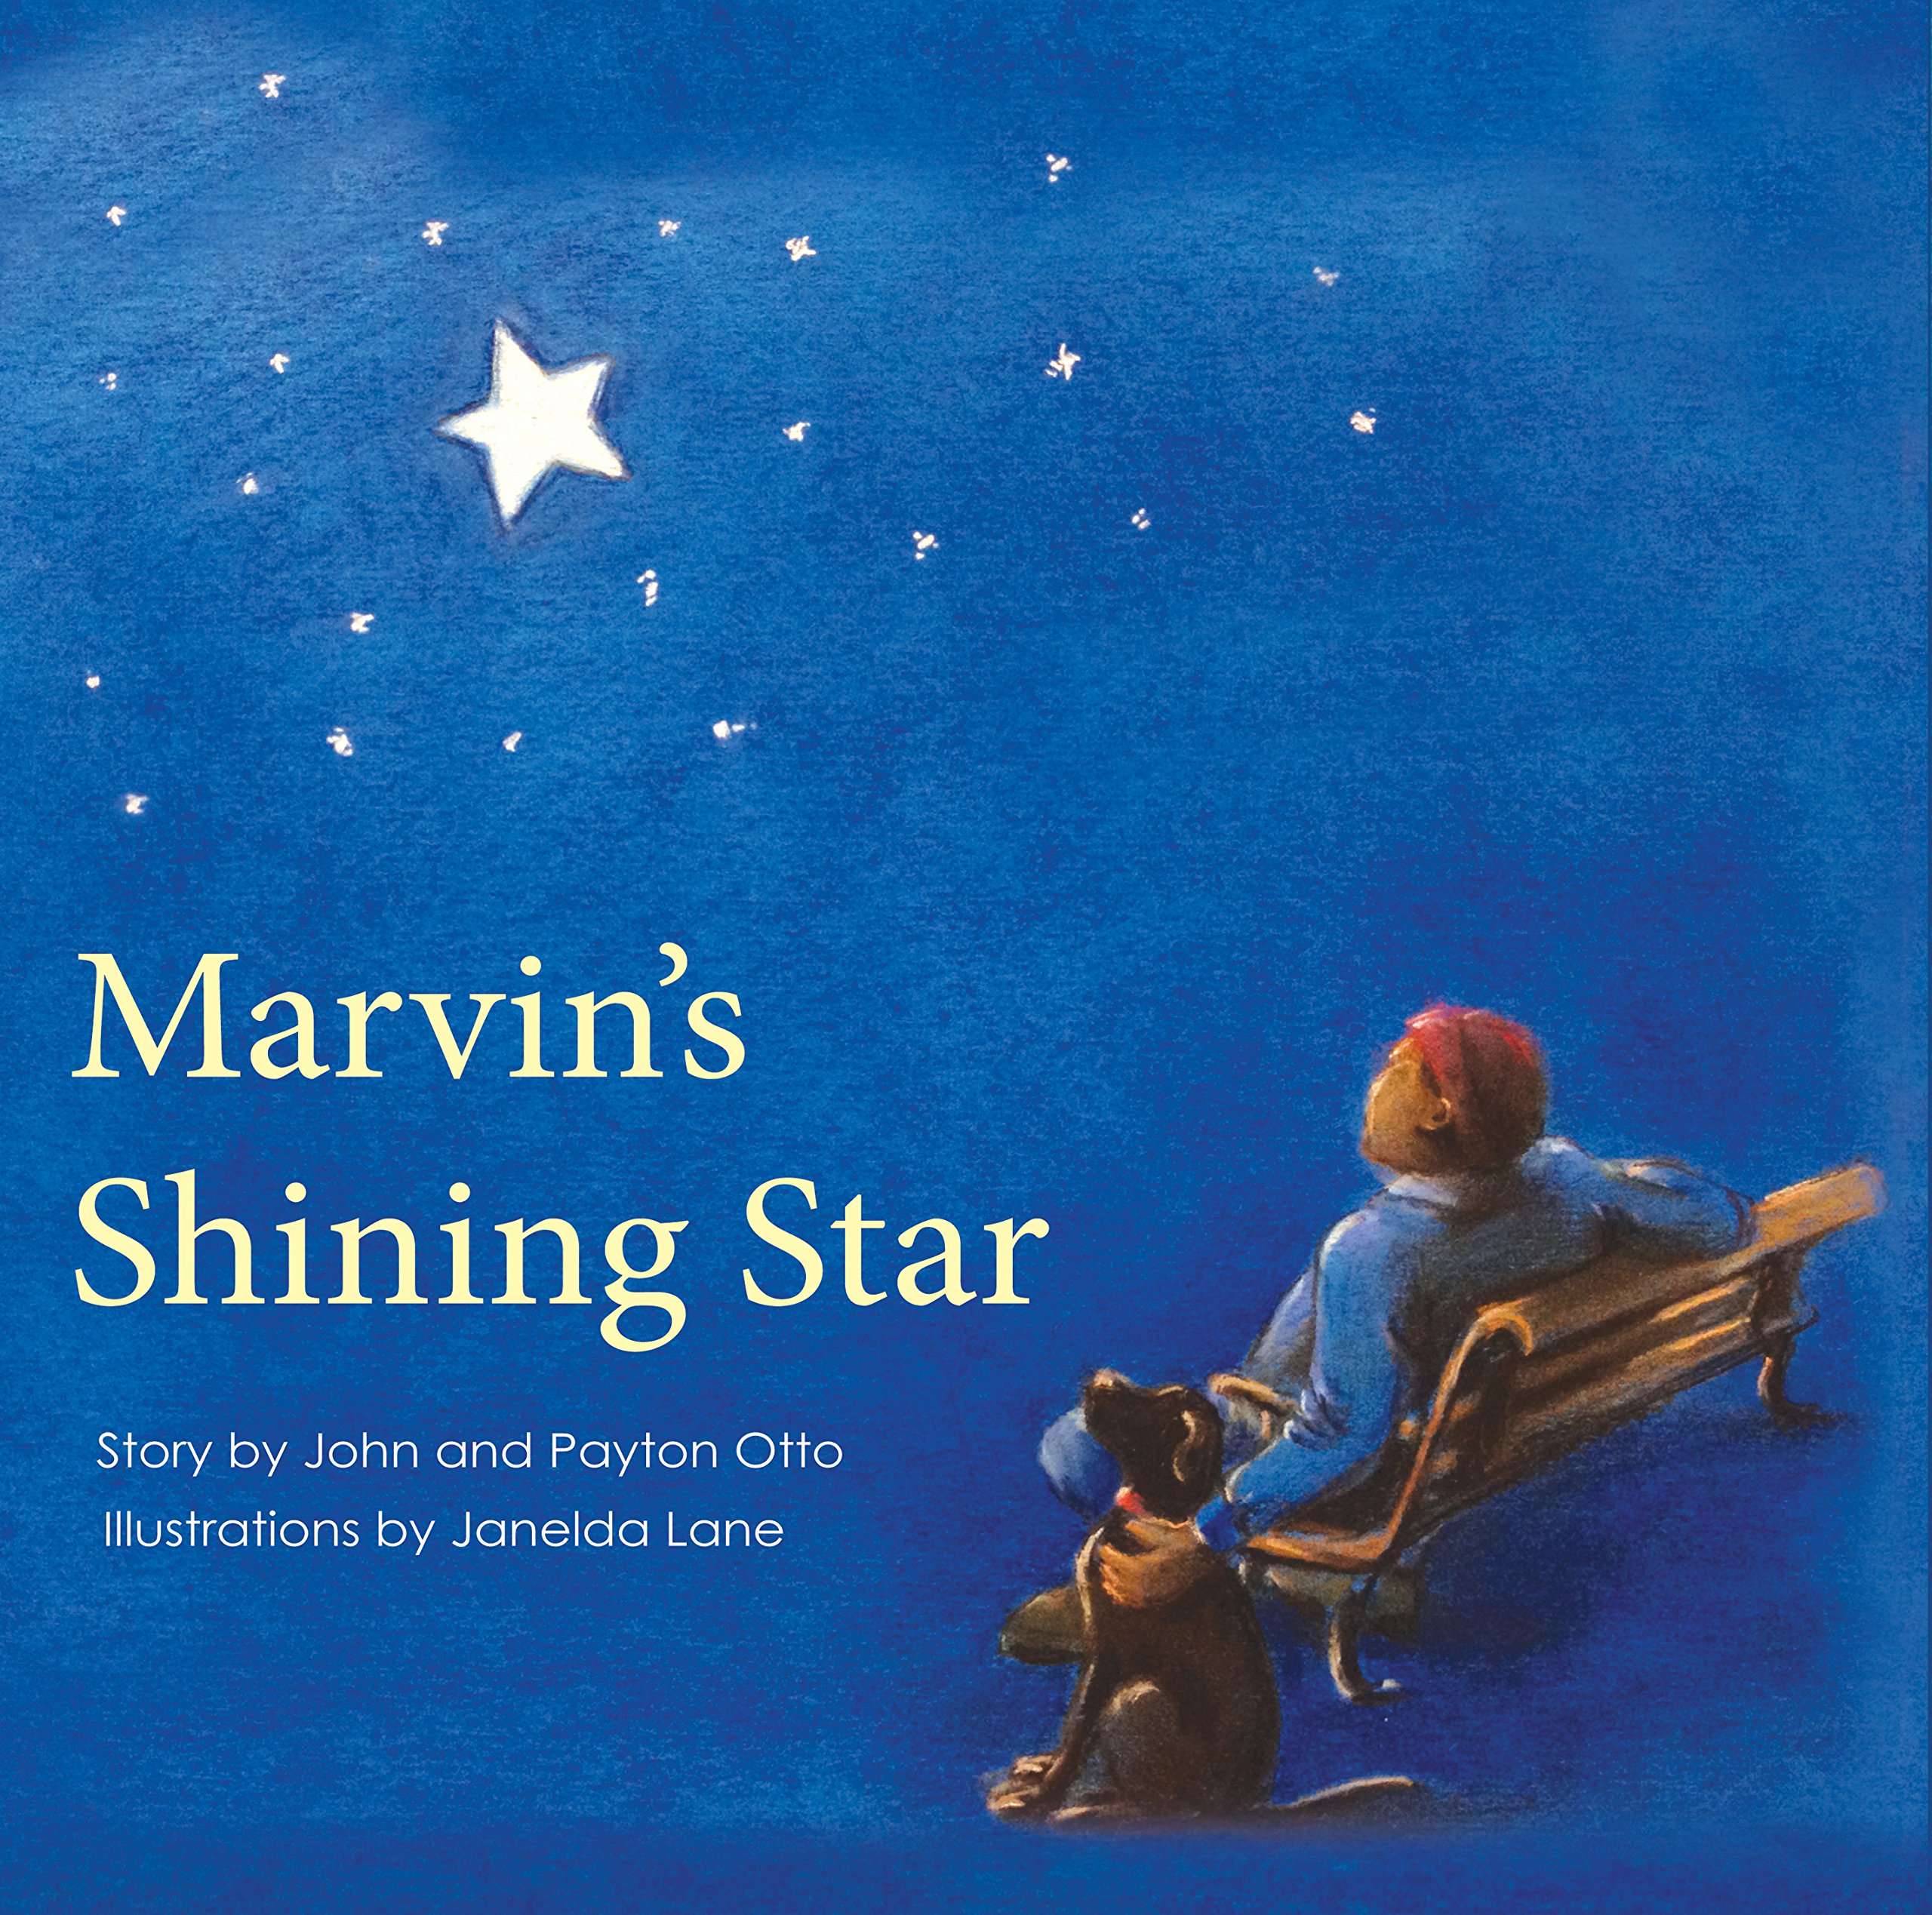 Marvin's Shining Star